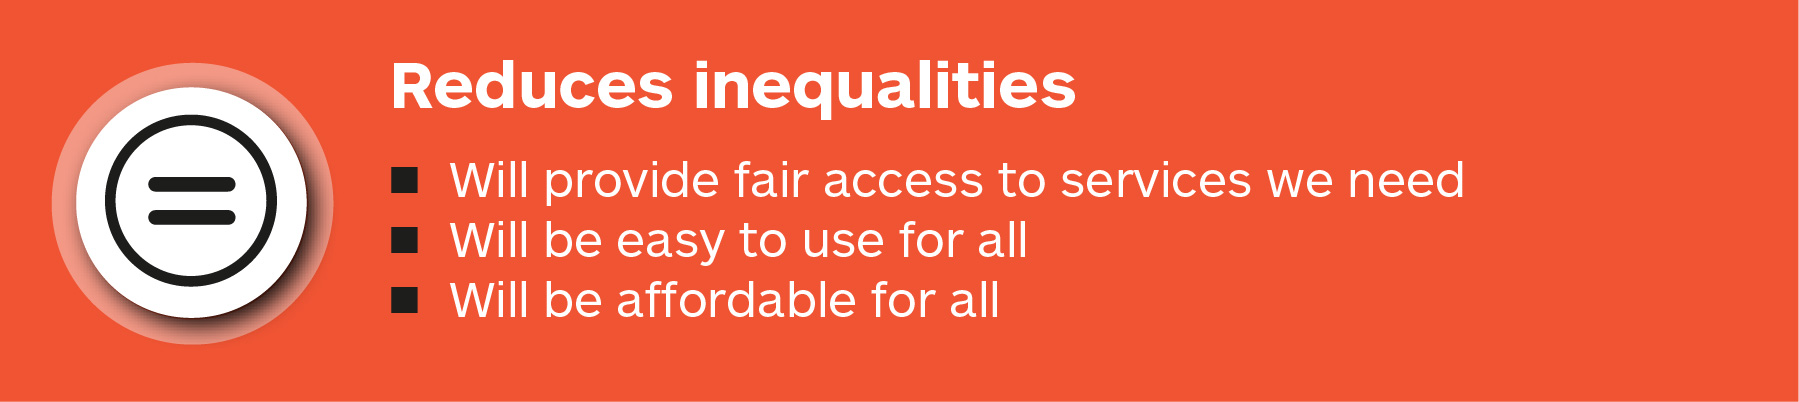 Reduces inequalities